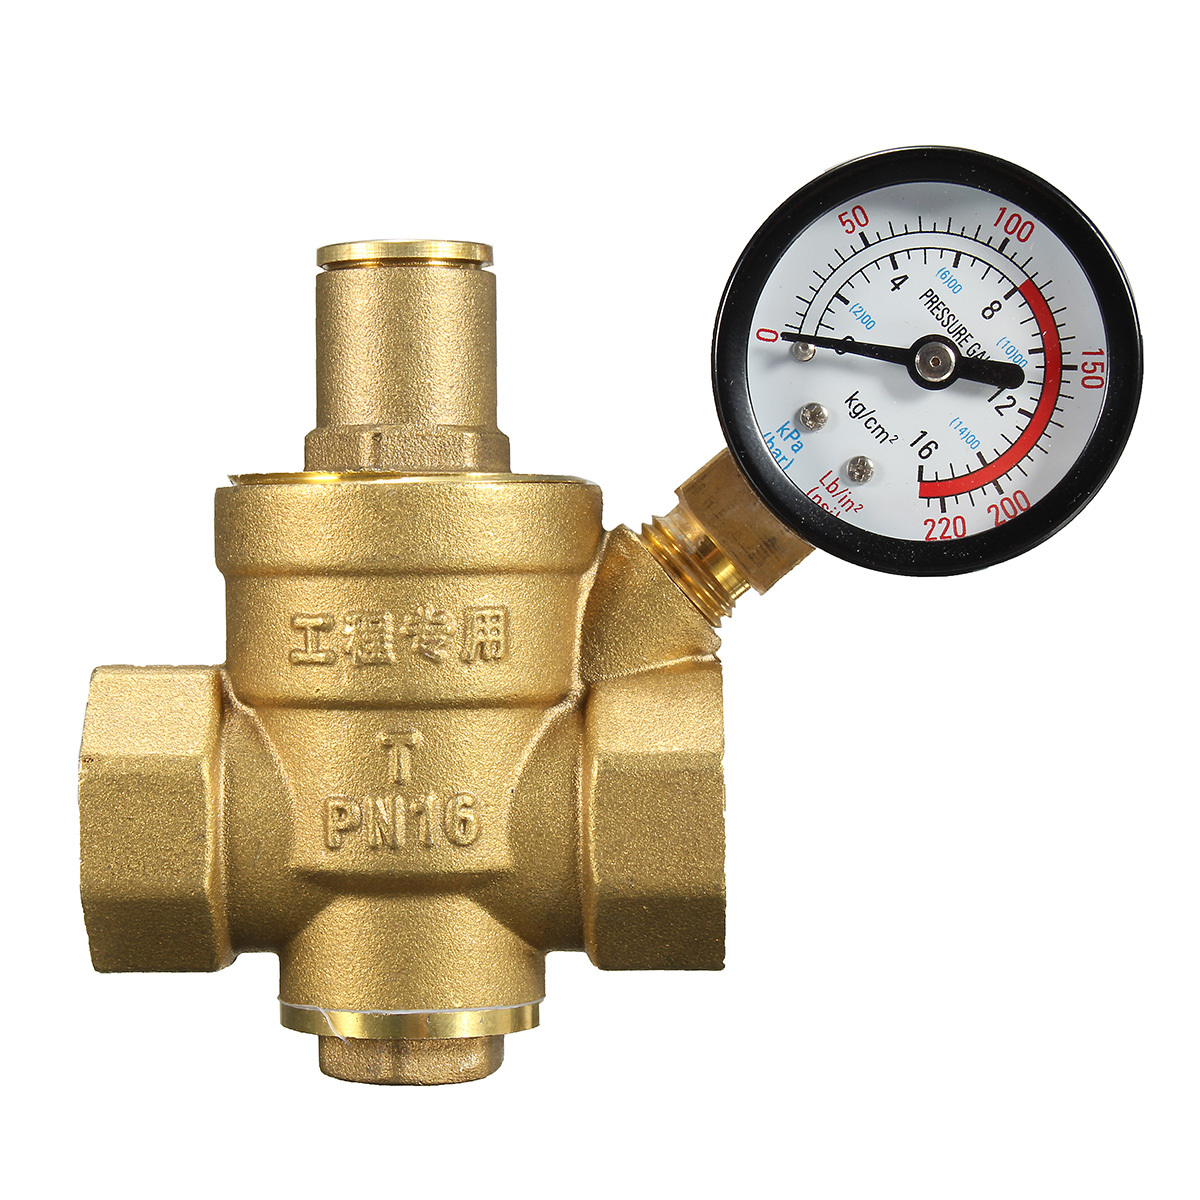 DN20 NPT 3/4" Adjustable Brass Water Pressure Regulator Reducer with Gauge Meter 2